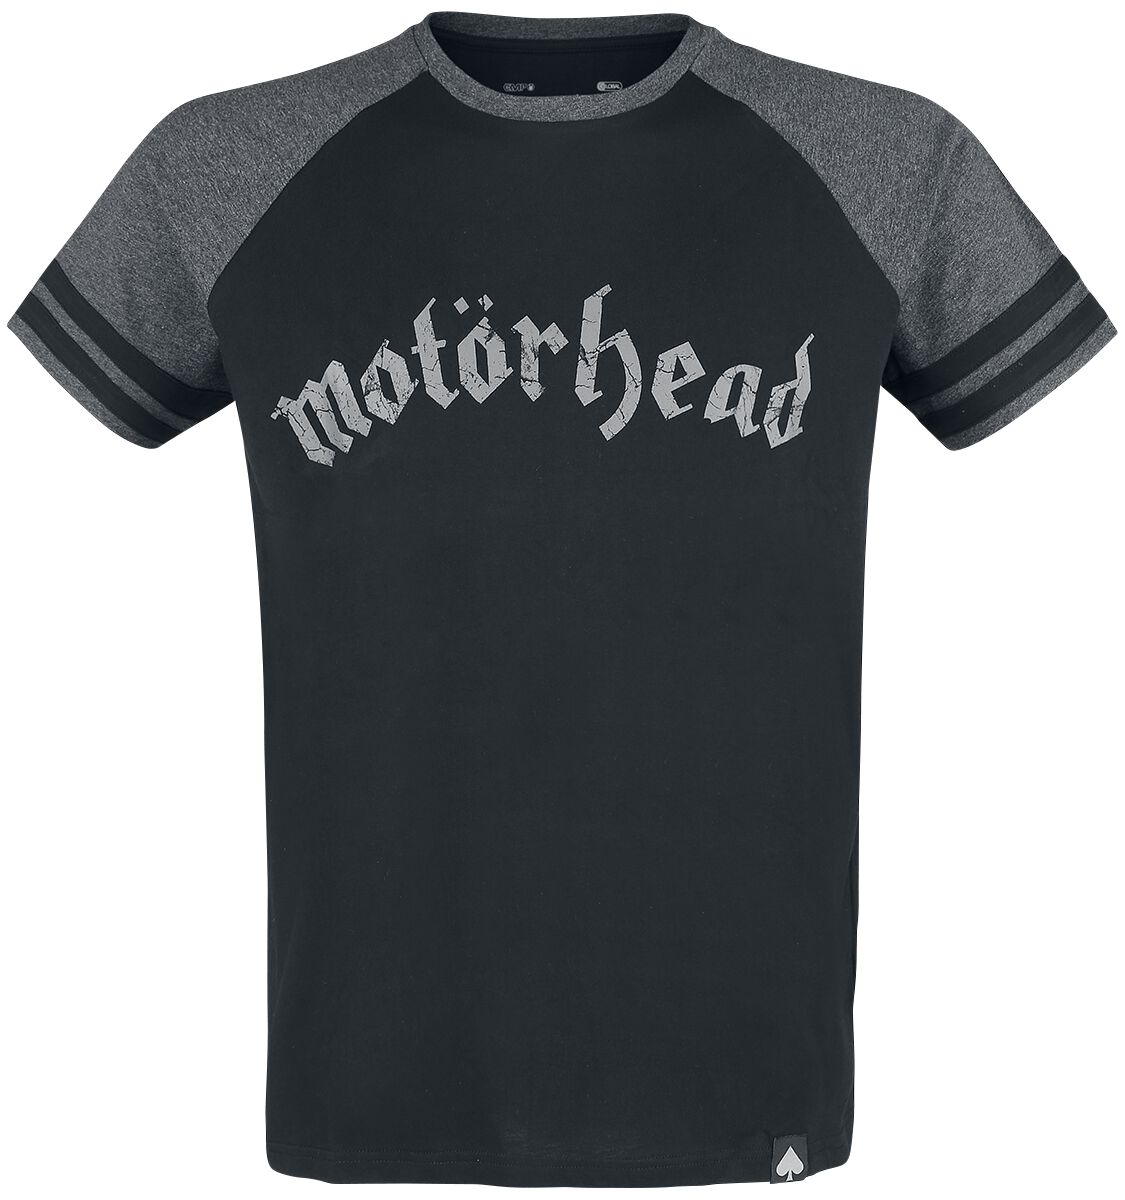 Motörhead T-Shirt - EMP Signature Collection - S bis 5XL - für Männer - Größe 4XL - schwarz/grau meliert  - EMP exklusives Merchandise!